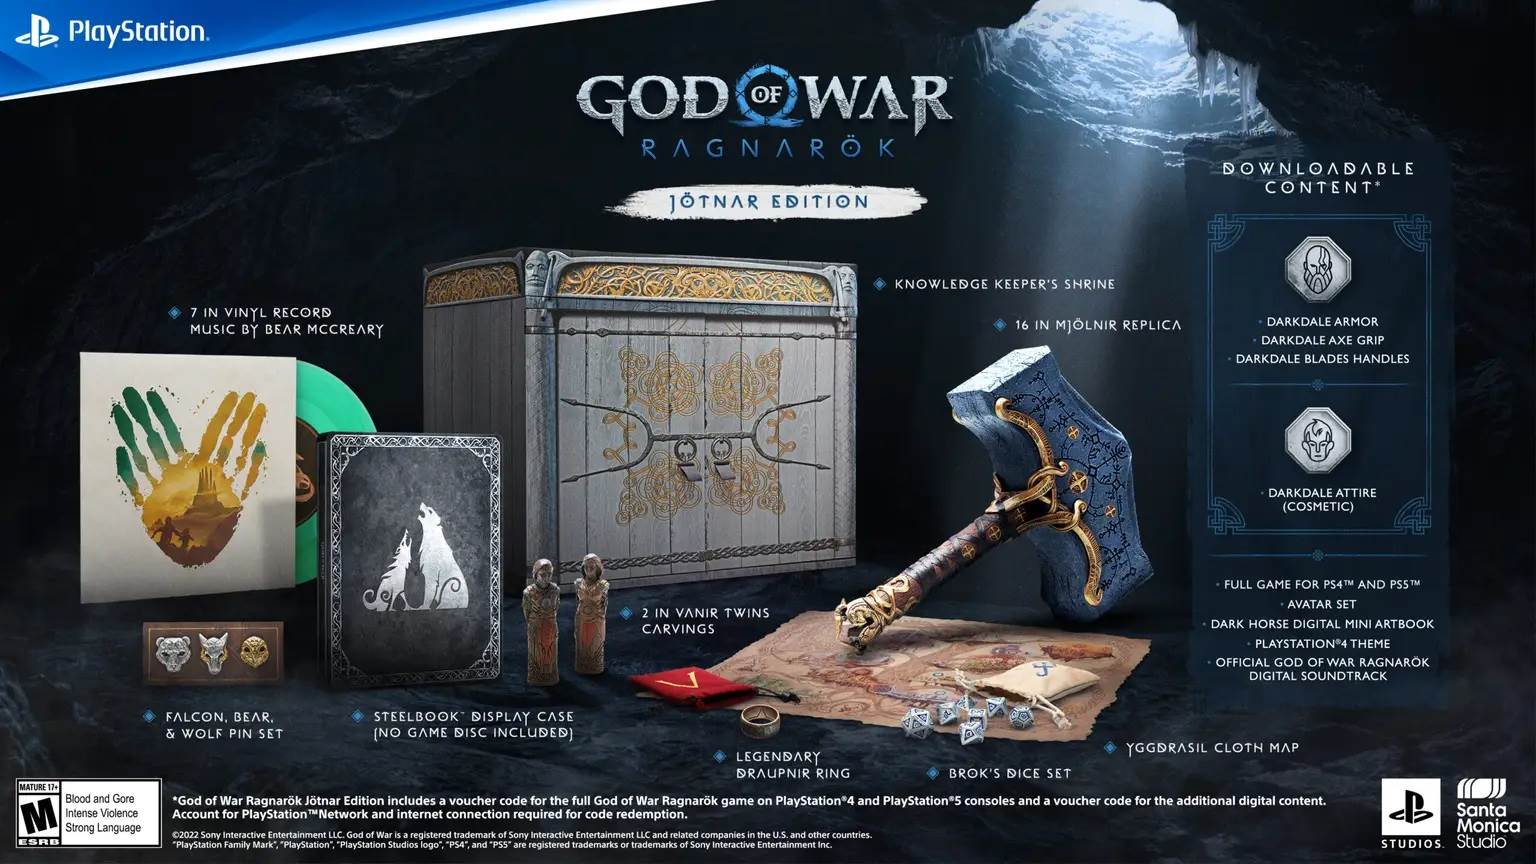  God of War Ragnarök – Jötnar Edition.jpg 